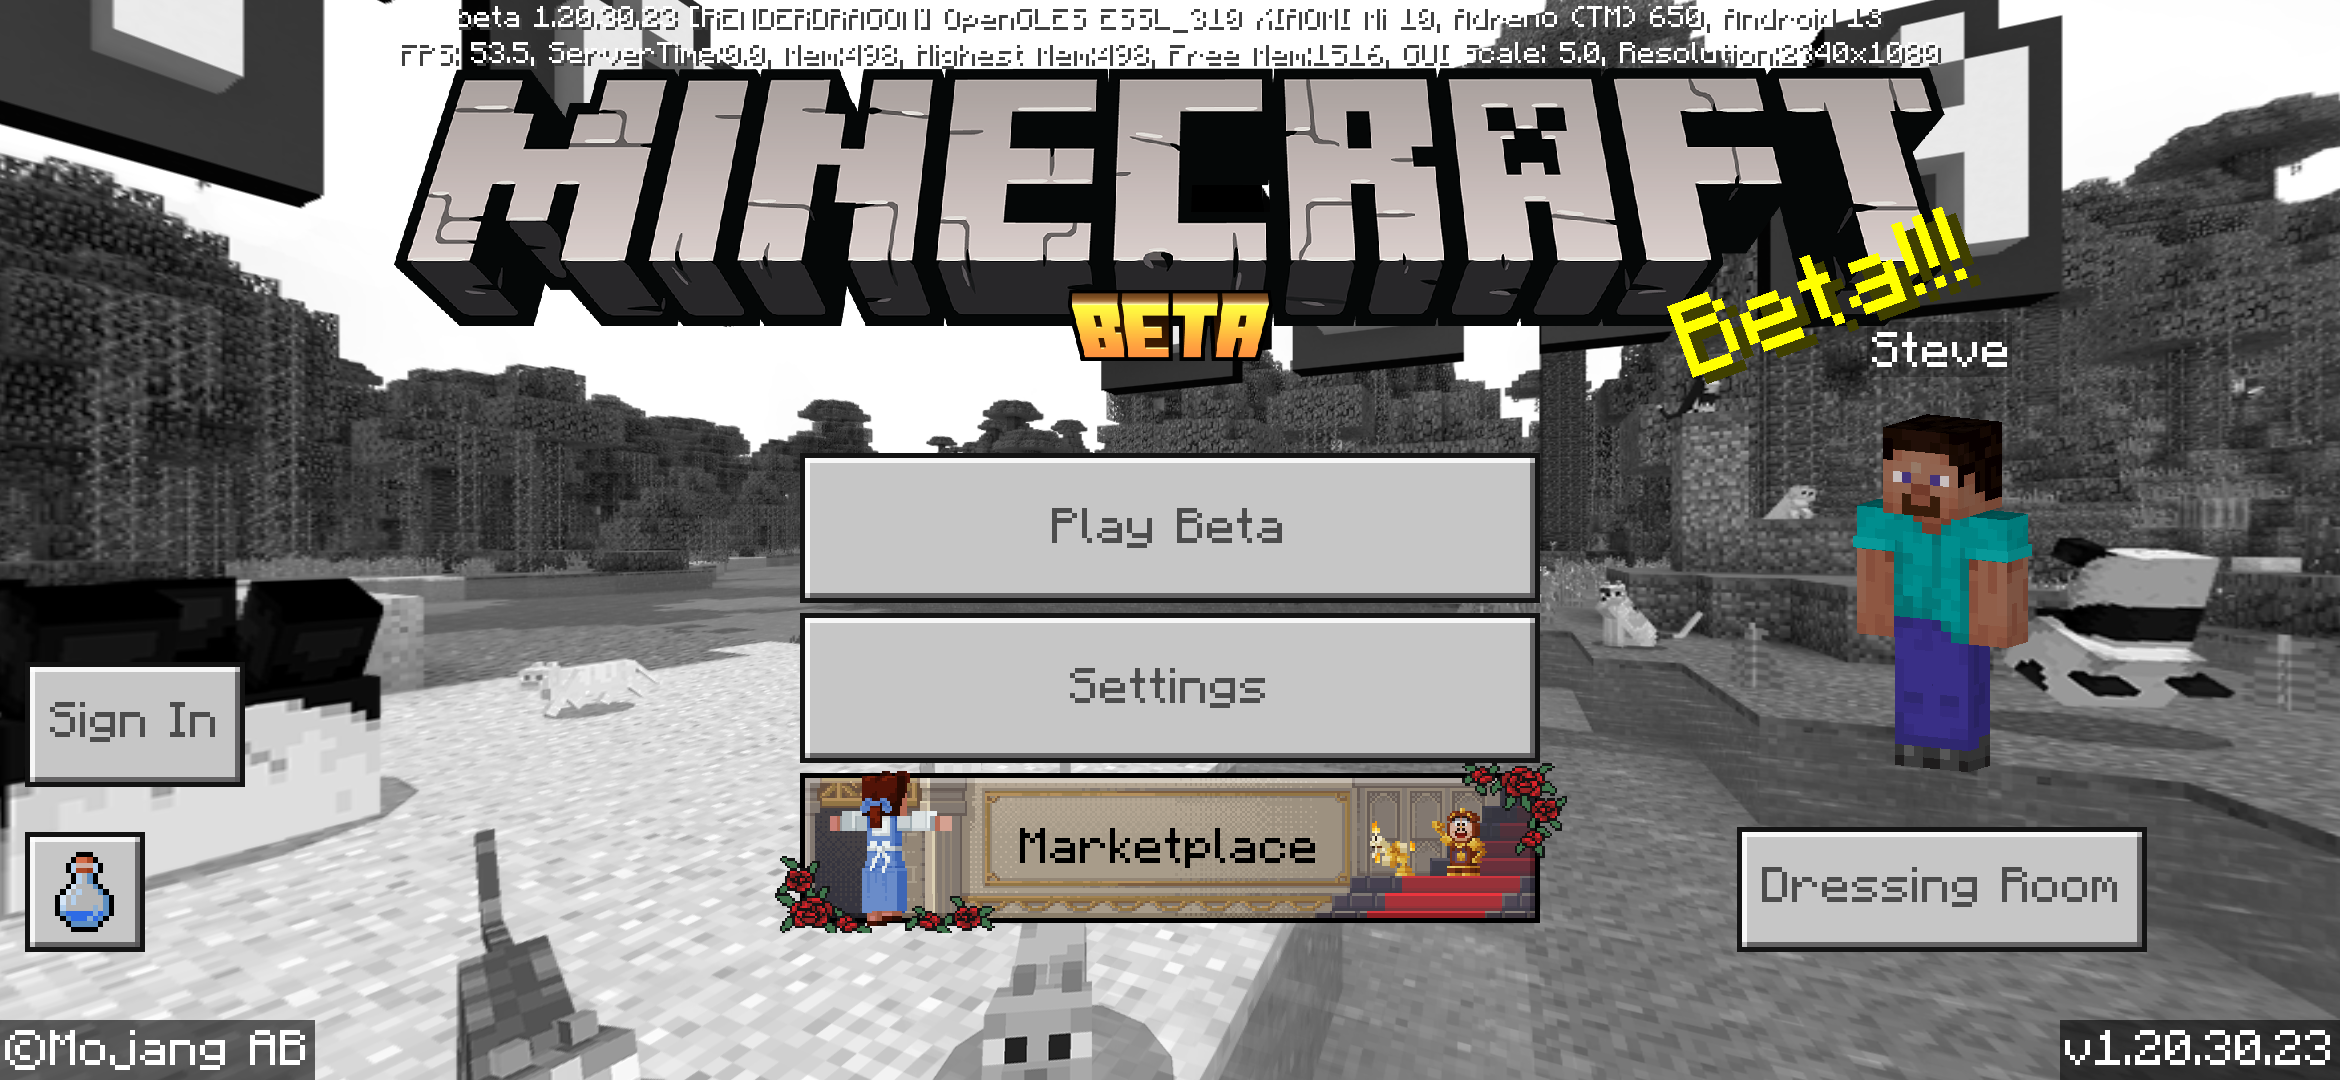 Edição Bedrock beta 1.15.0.51 - Minecraft Wiki